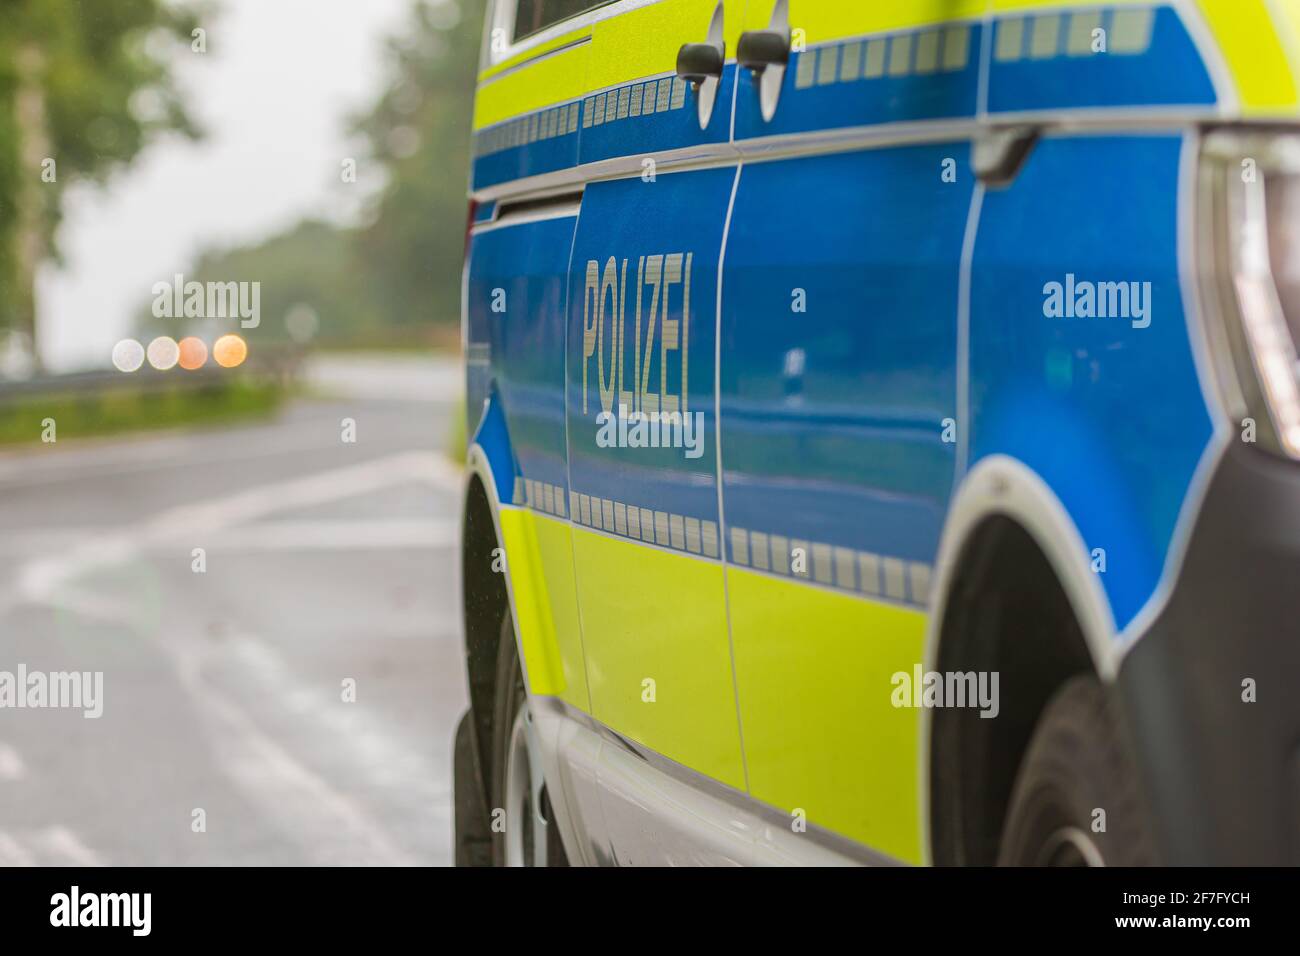 Straßensperre mit gelbe Rundumleuchte Blaulicht Stockfotografie - Alamy